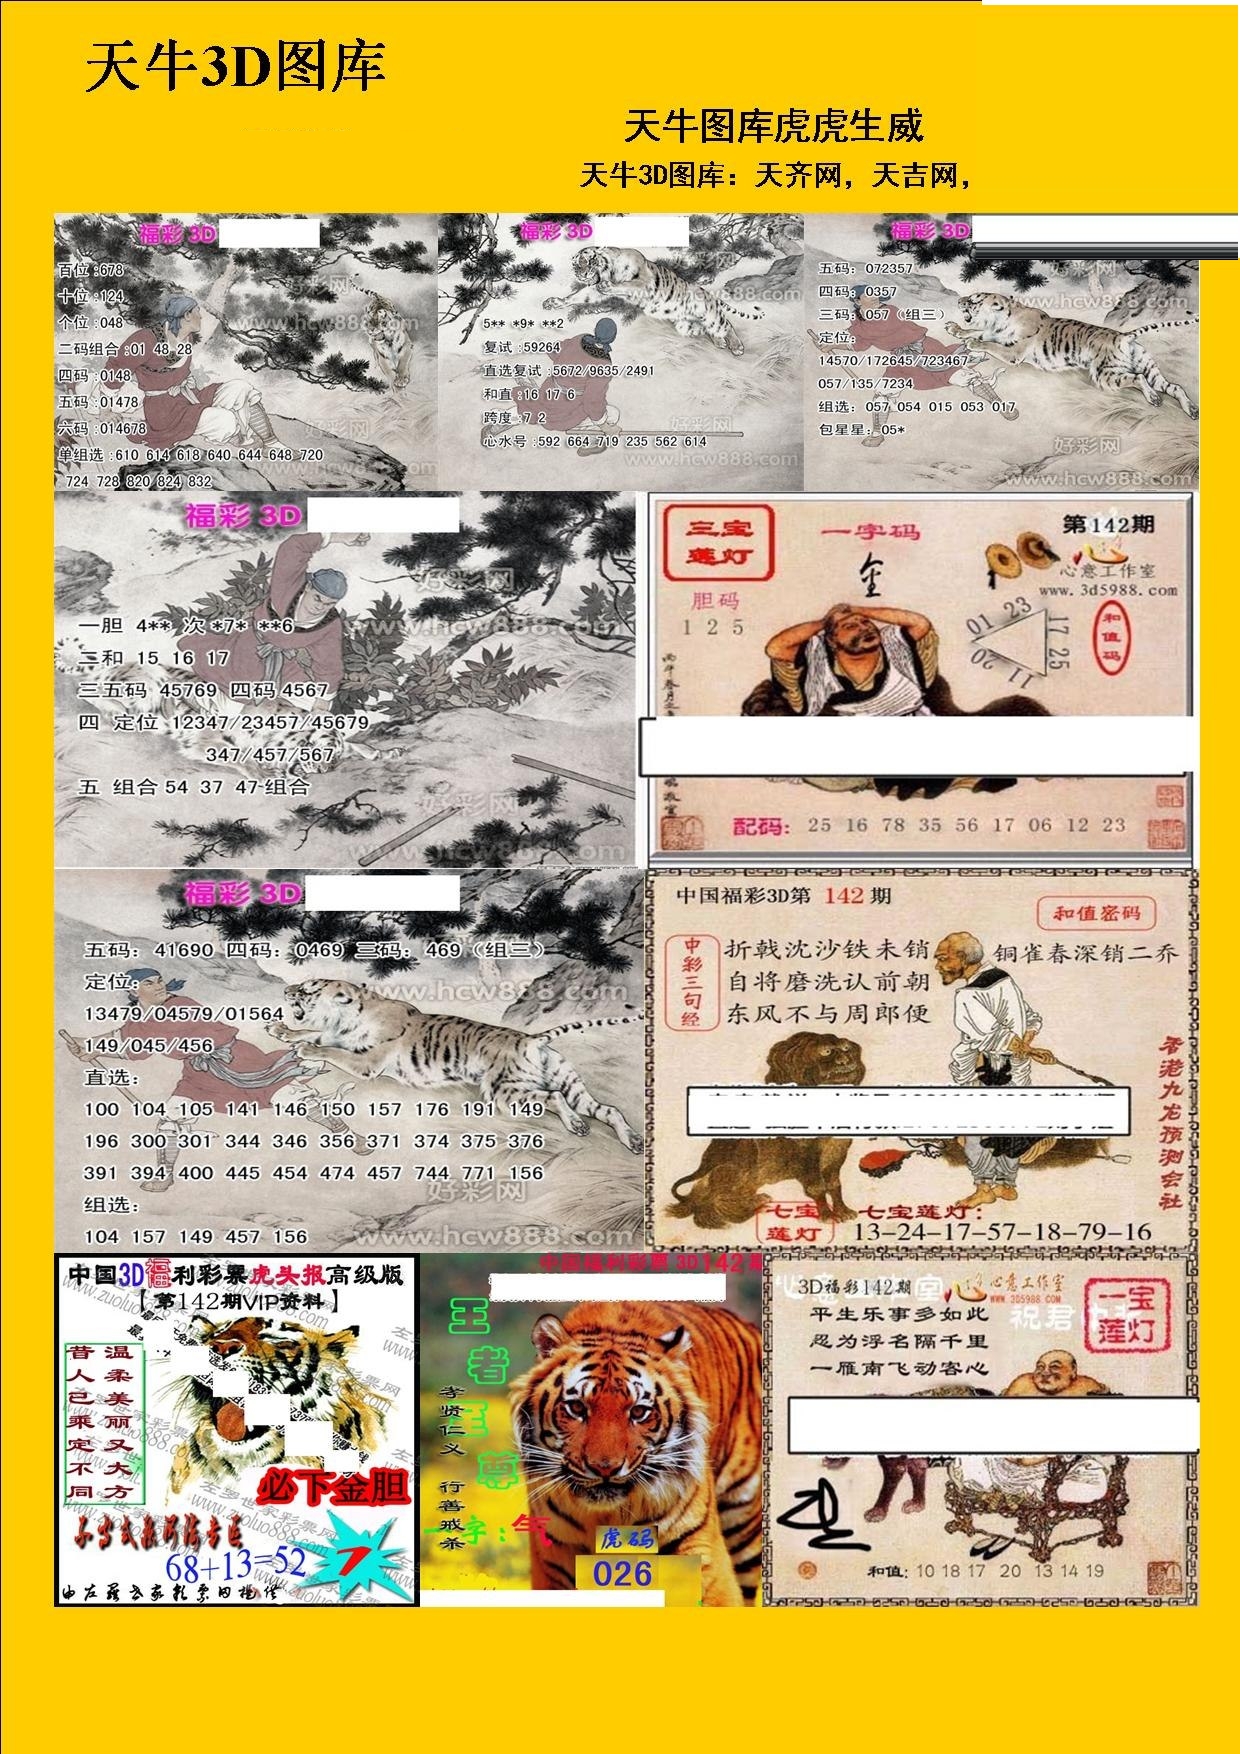 20142期福彩3d 天牛彩报图版系列 3d图库 为彩网 微彩论坛